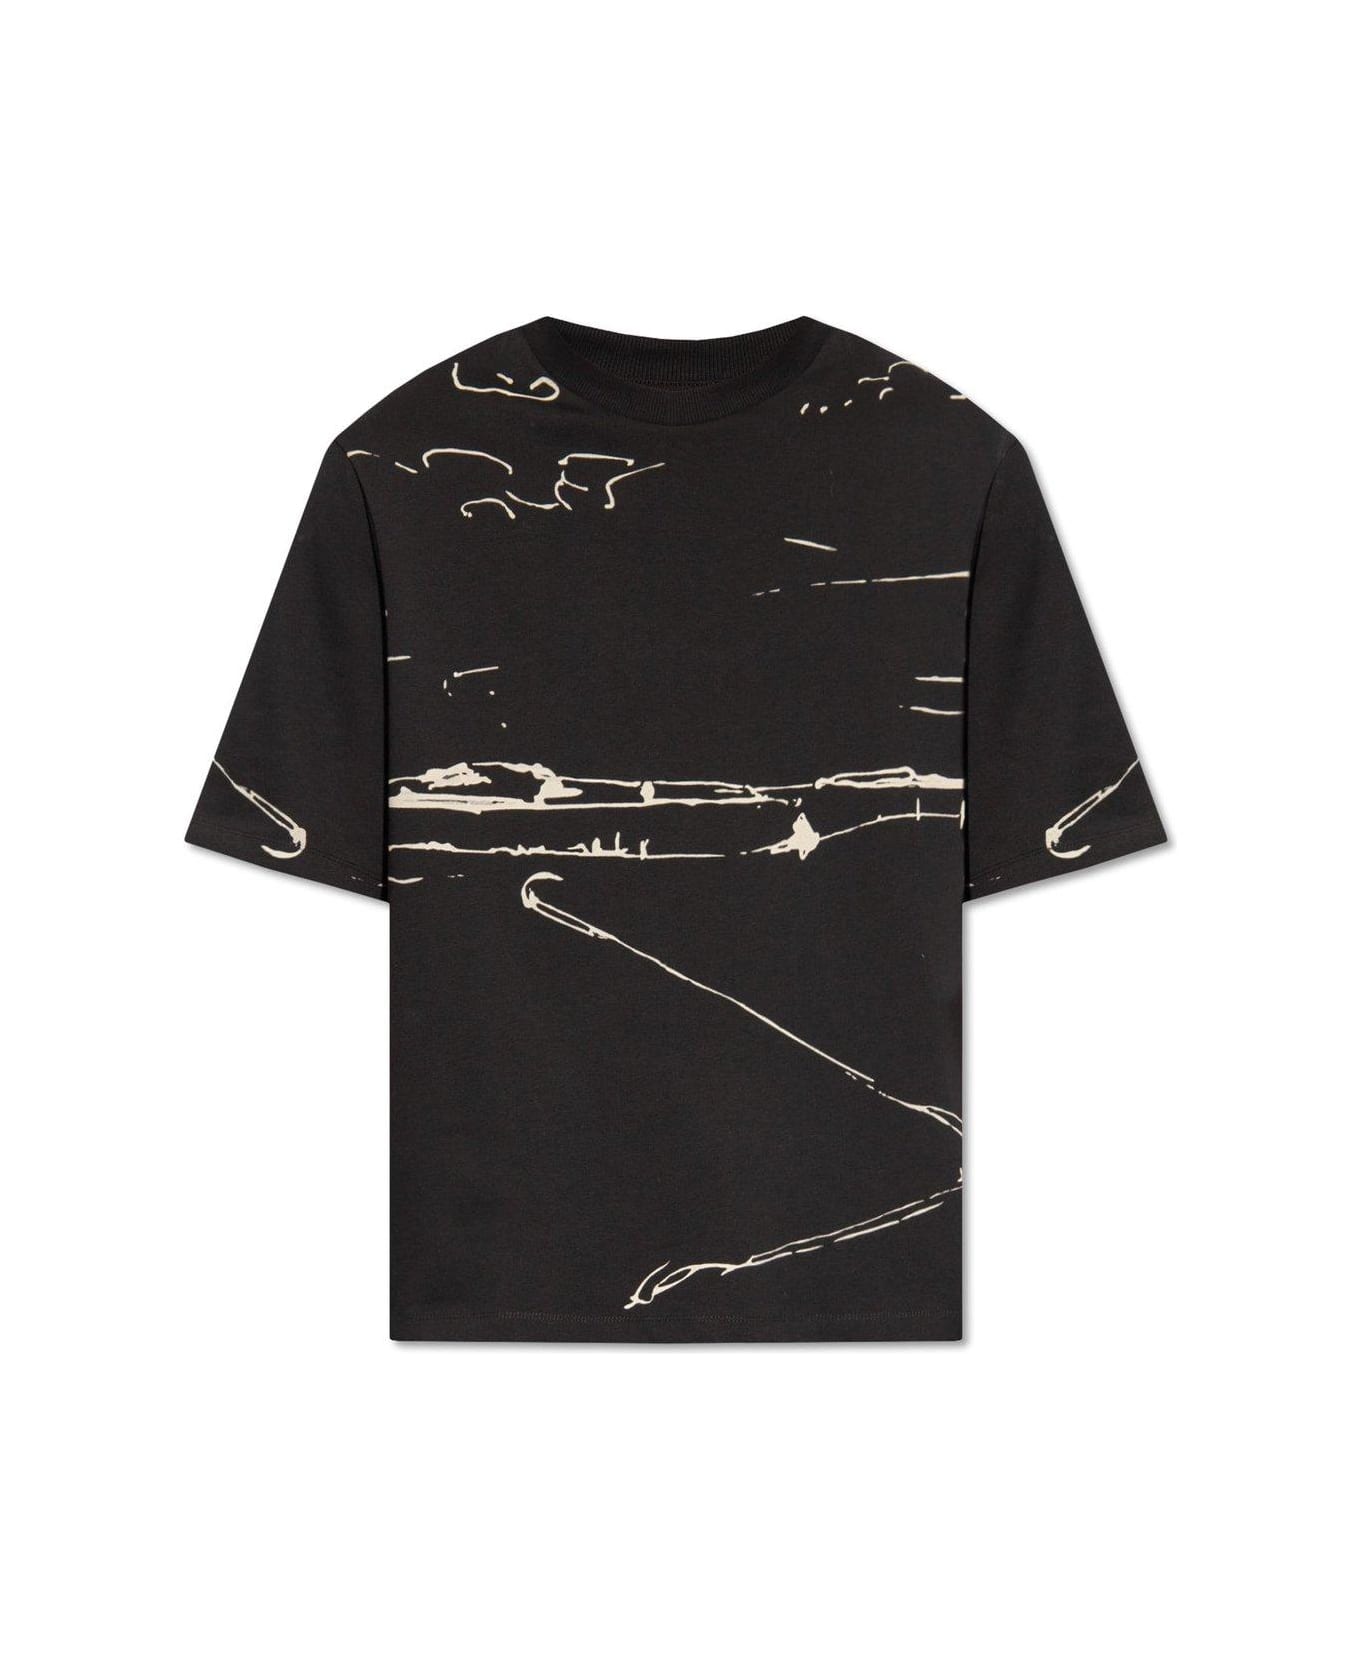 Emporio Armani Printed T-shirt - Black シャツ